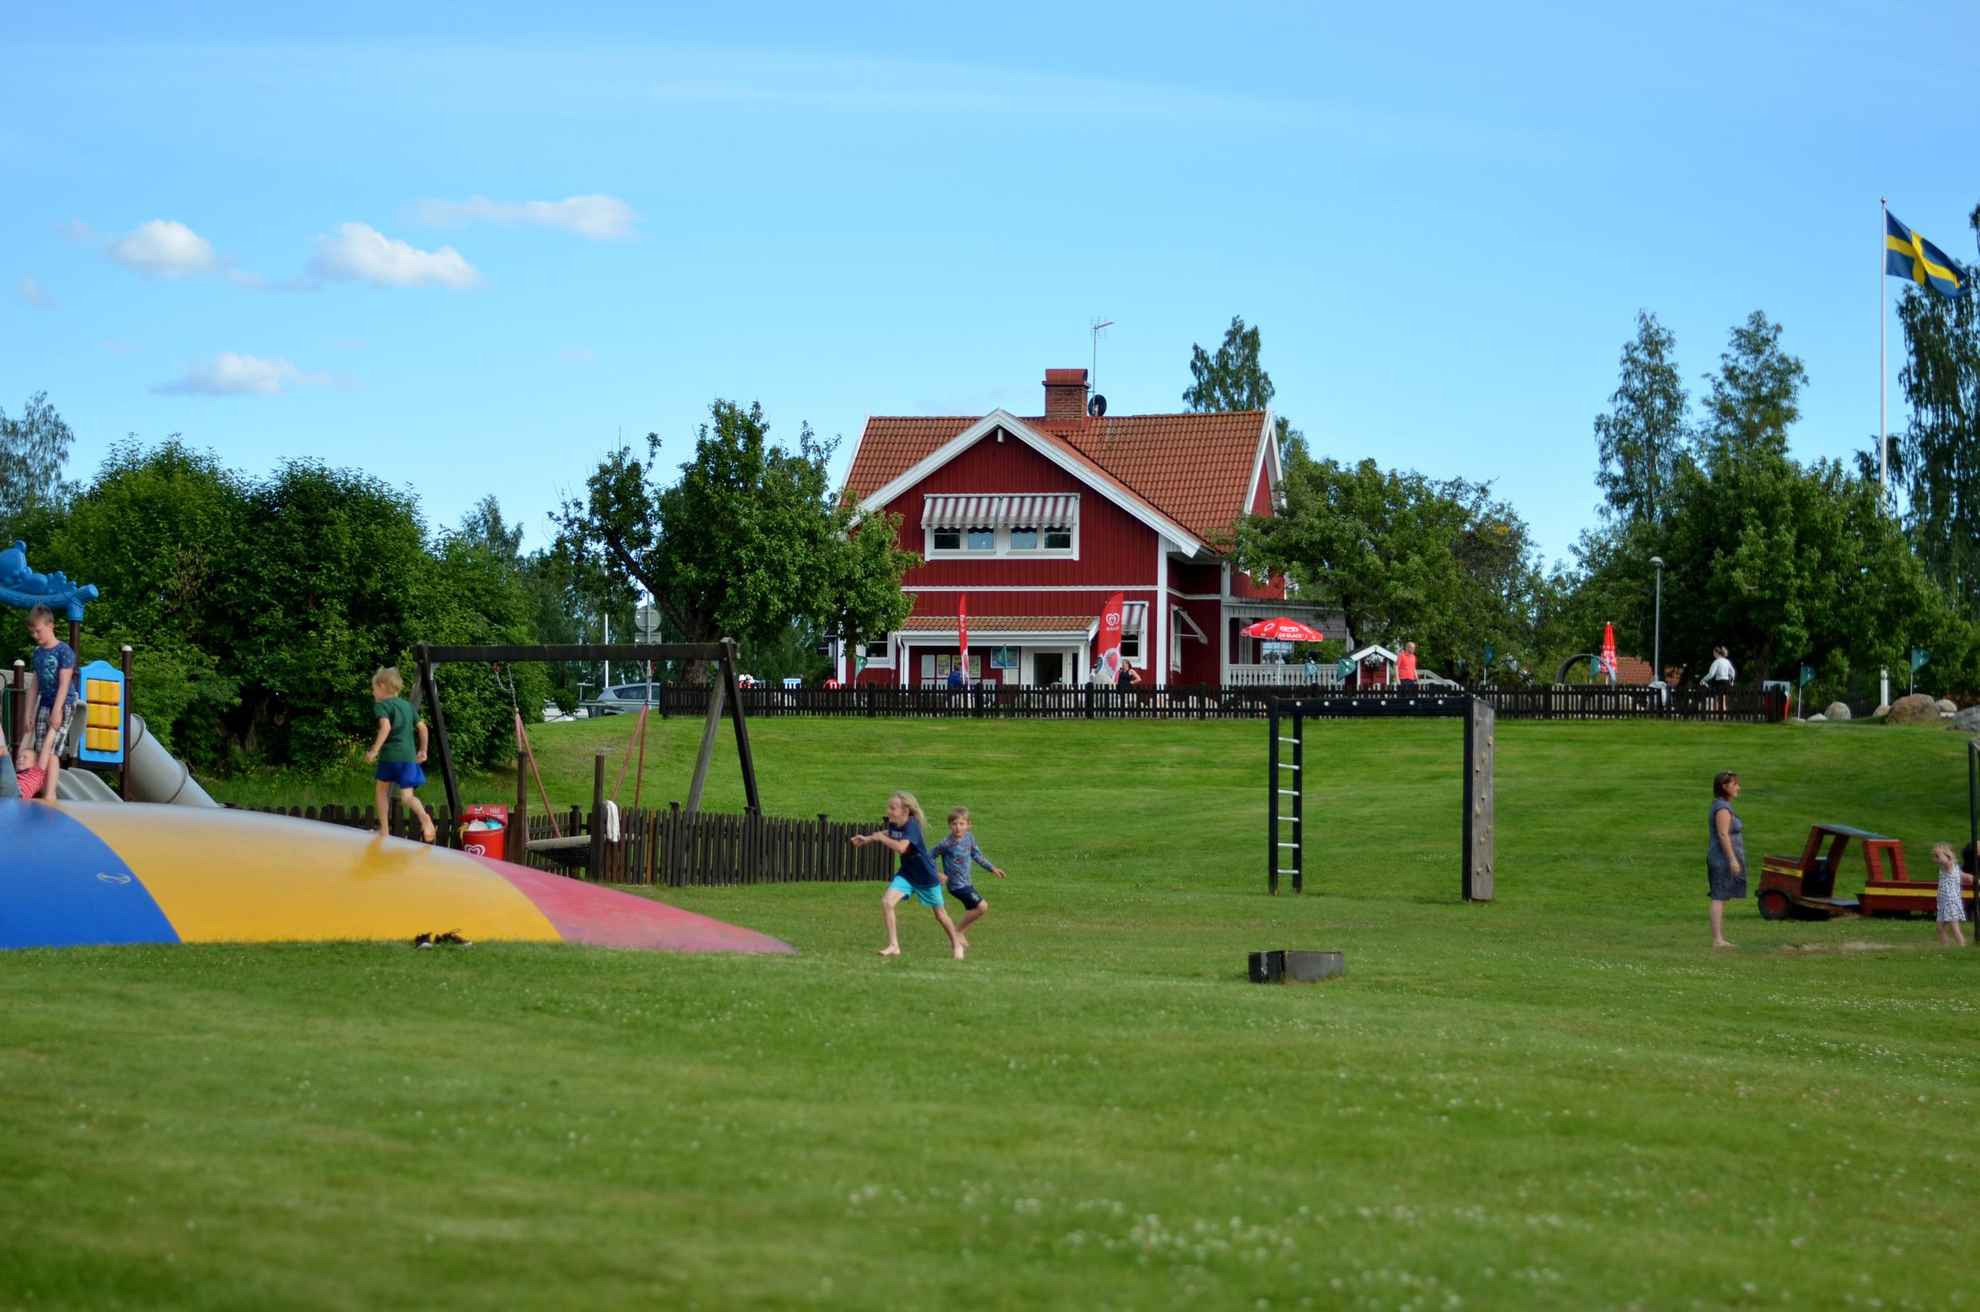 Kinderen op de speelplaats van Frykenbadens Camping. Een groot rood huis achter de speeltuin.